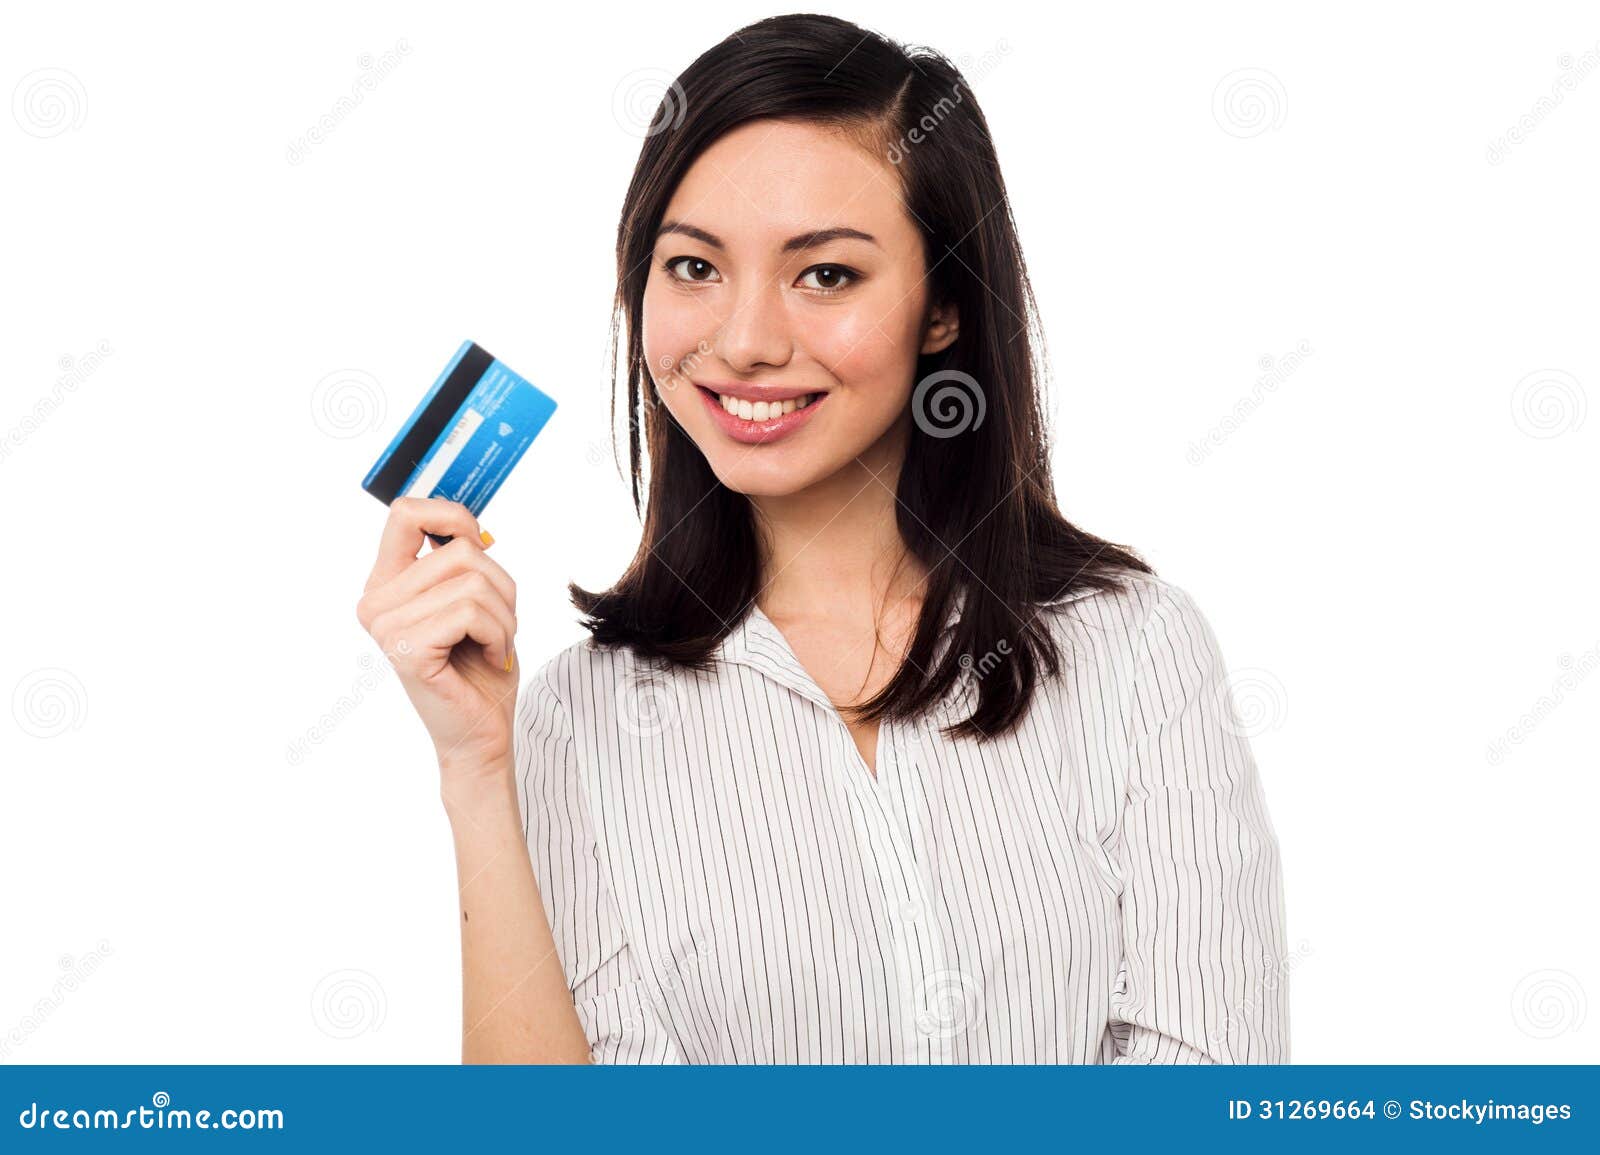 Credit Card Models